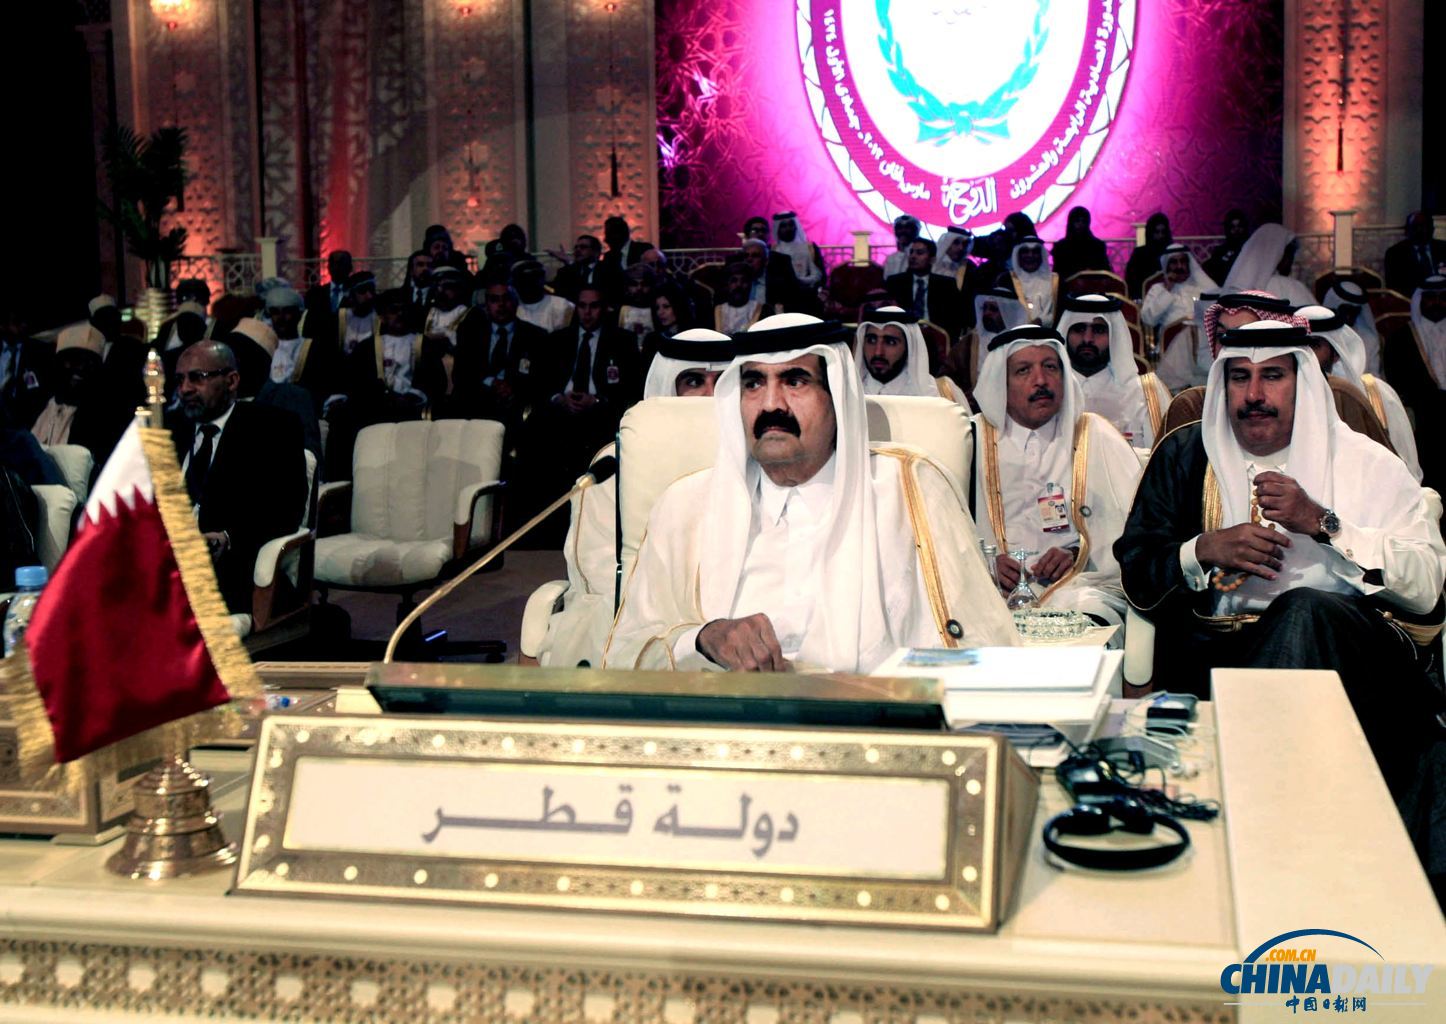 卡塔尔领导人传位给儿子 分析称国家政策将保持稳定